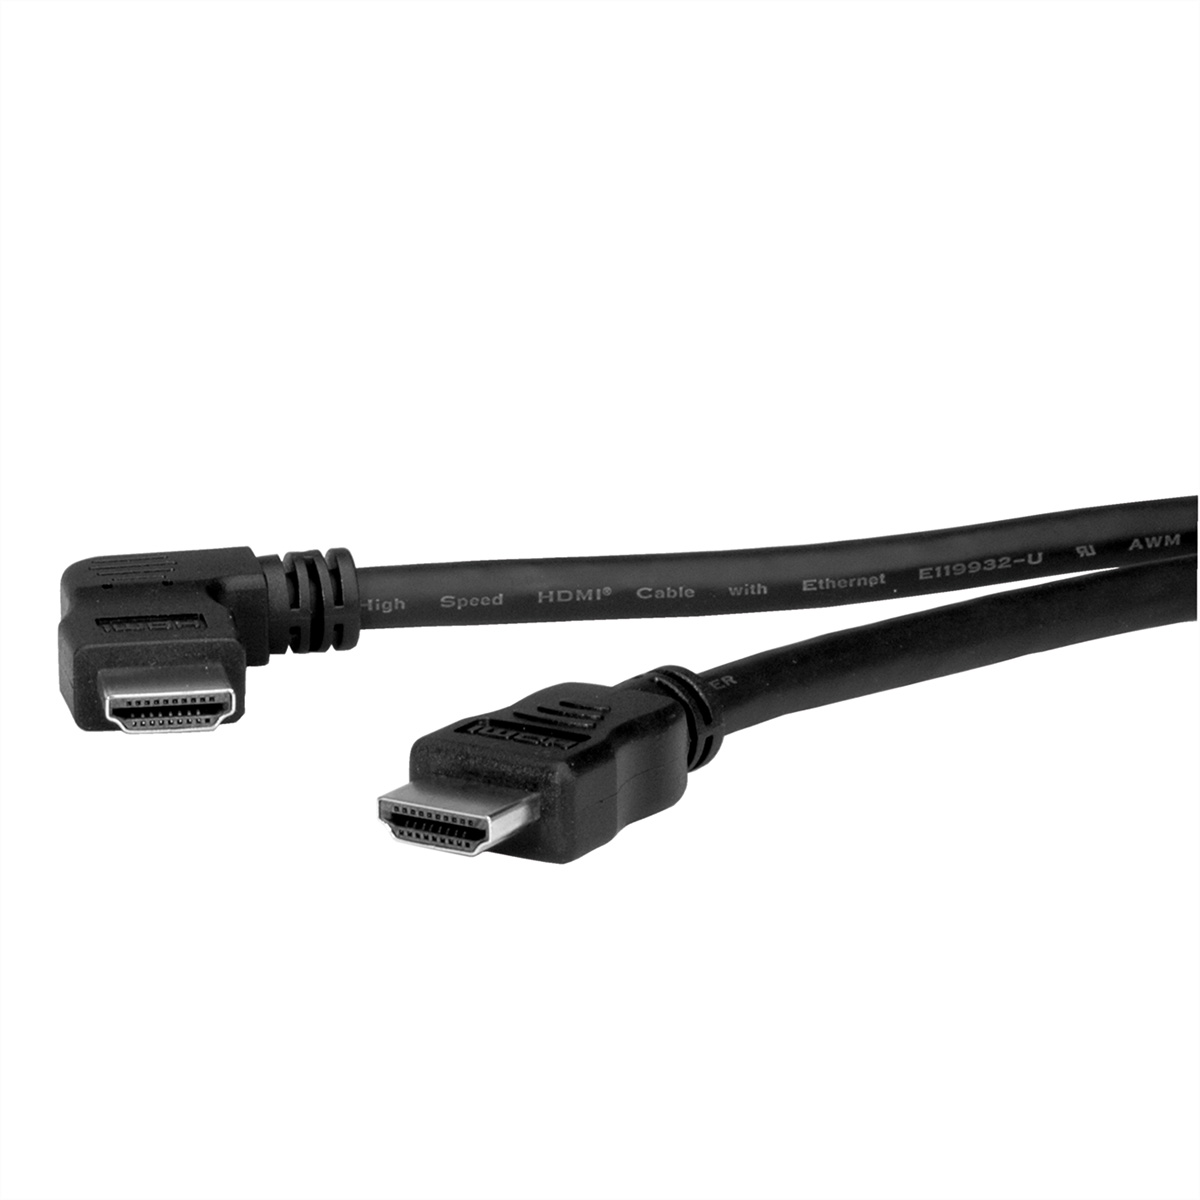 Kabel Ethernet, ROLINE HDMI High linksgewinkelt mit High HDMI Speed Kabel Ethernet mit Speed